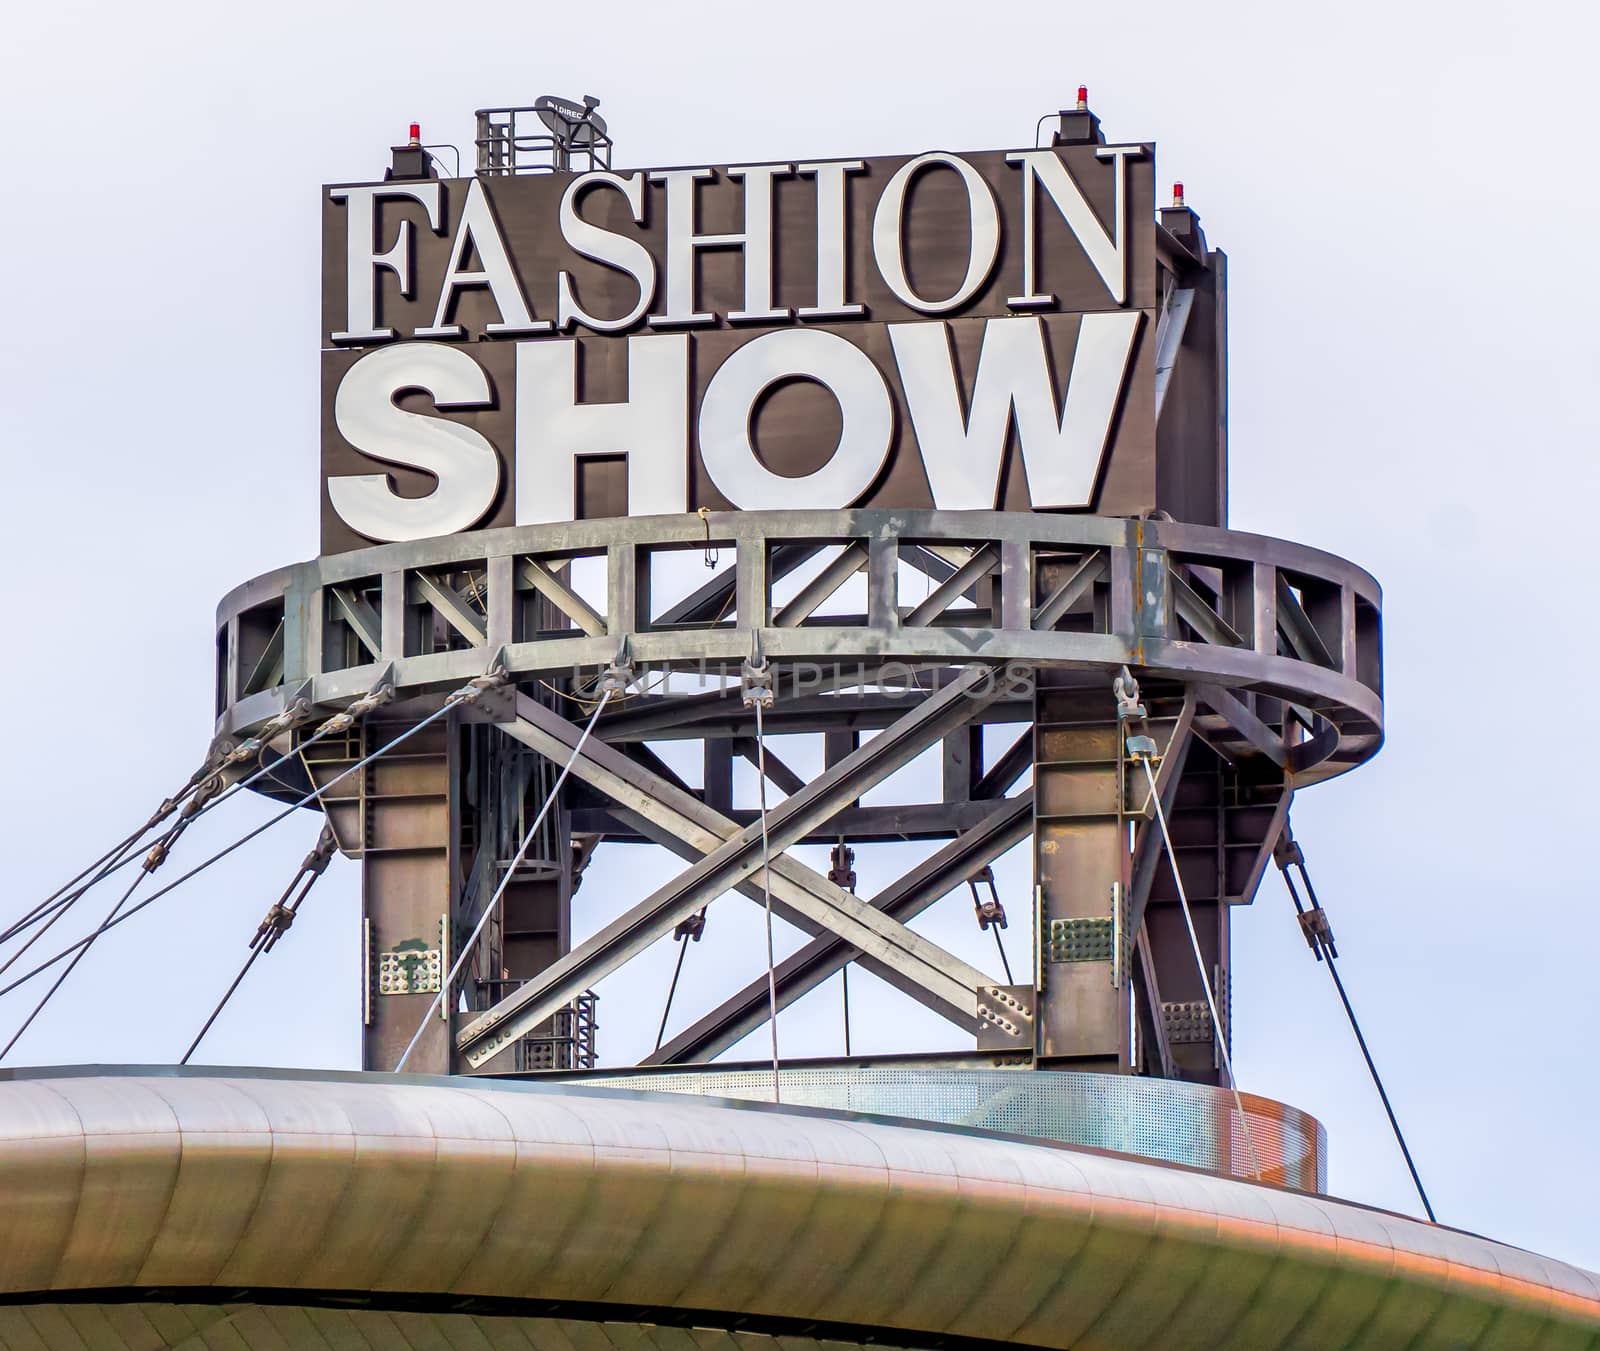 LAS VEGAS, NV/USA - FEBRUARY 15, 2016: Fashion Show Mall sign and logo. Fashion Show Mall is a shopping mall located on the Las Vegas Strip.